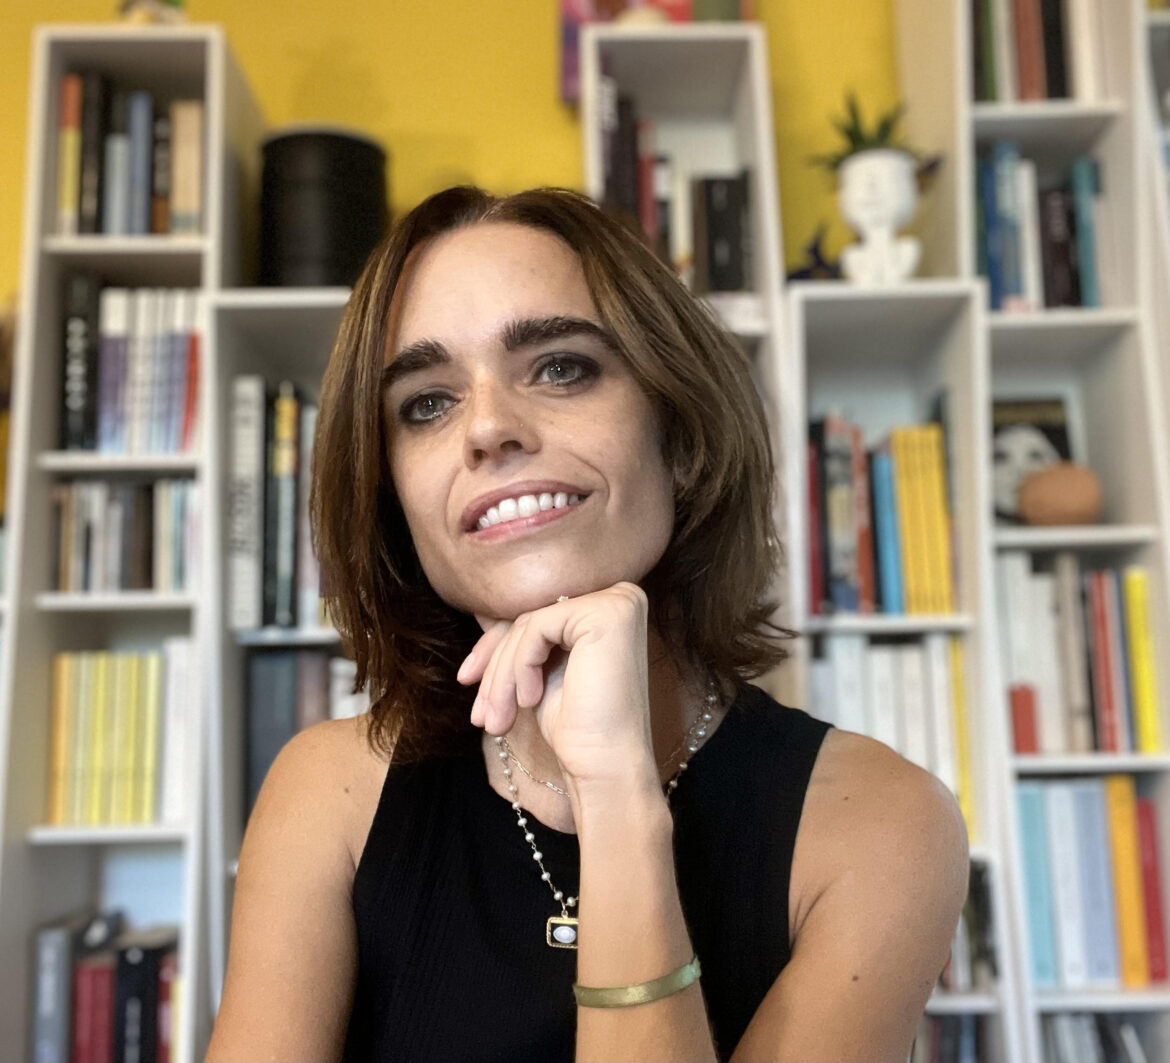 Michela Lenzi DISEGUAGLIANZE SOCIO-ECONOMICHE E USO PROBLEMATICO DEI SOCIAL MEDIA NEGLI ADOLESCENTI